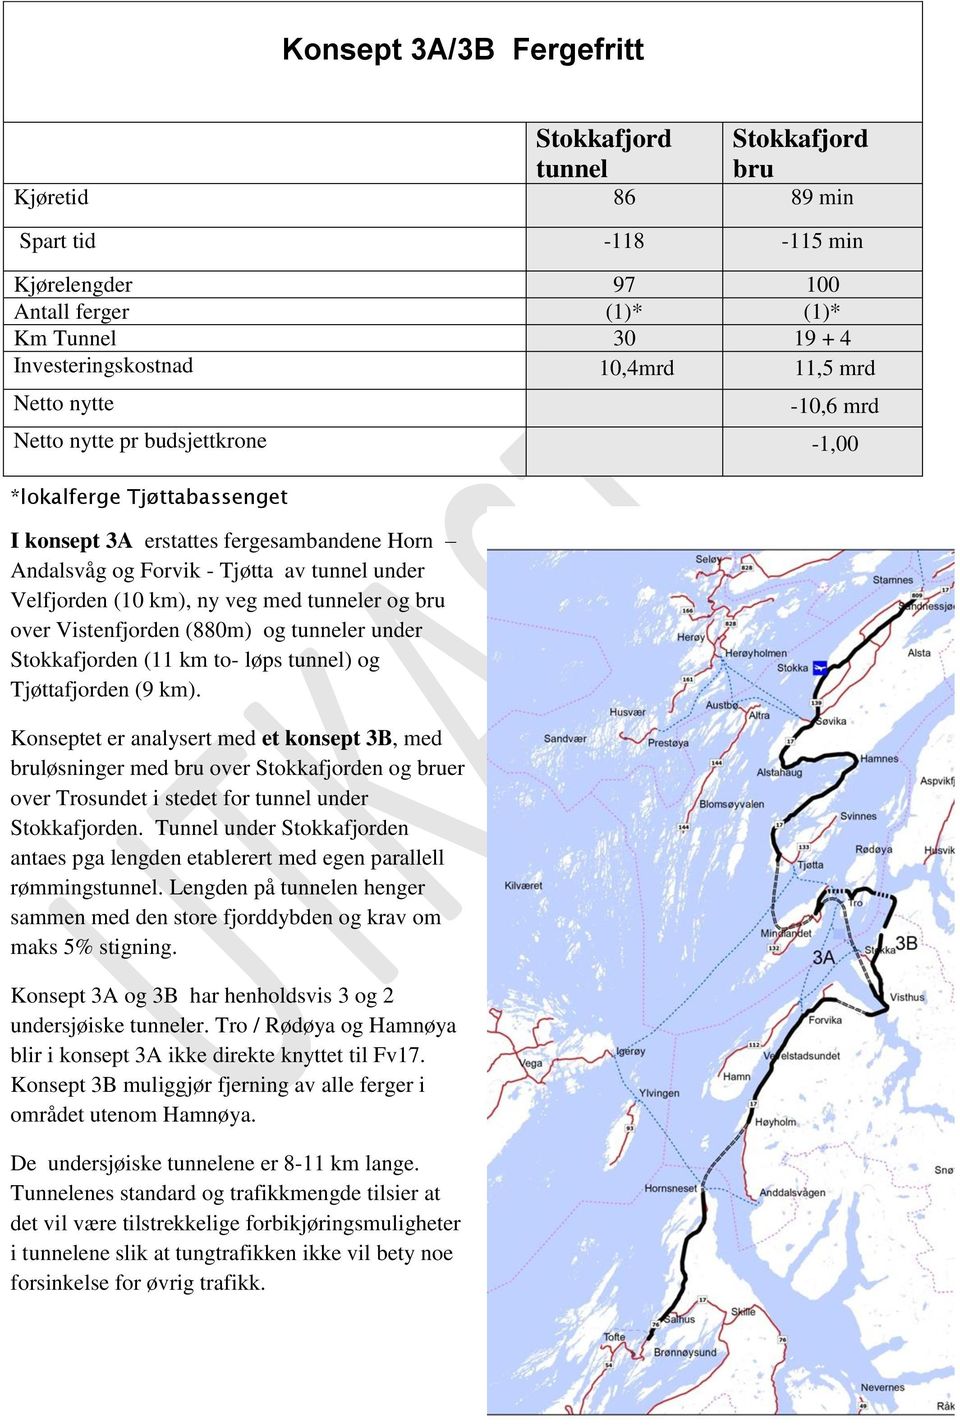 et er analysert med et konsept 3B, med bruløsninger med bru over Stokkafjorden og bruer over Trosundet i stedet for tunnel under Stokkafjorden.